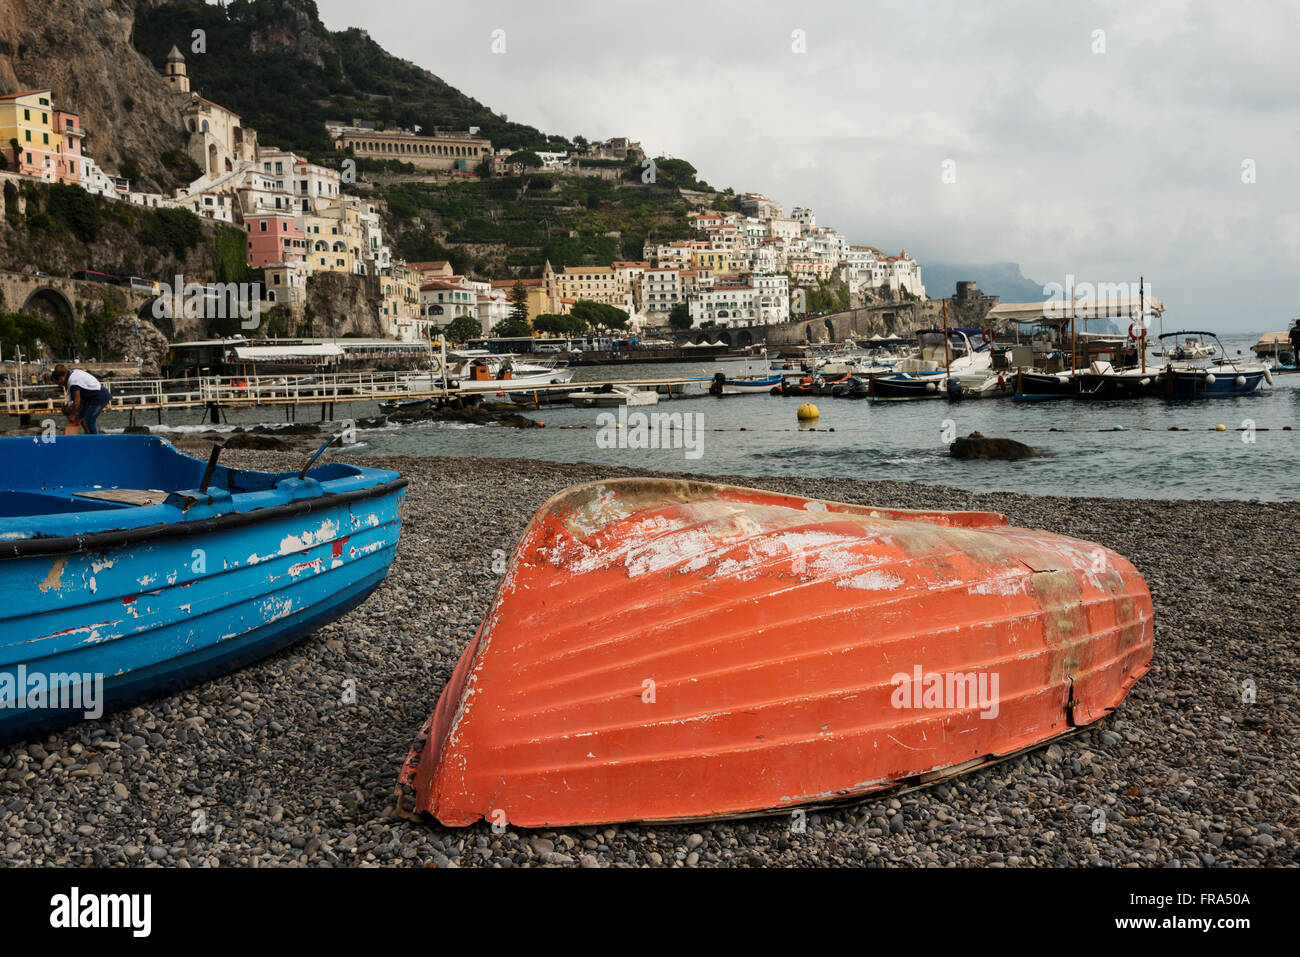 Colourful wooden boats on the shore along the Amalfi coast; Amalfi, Campania, Italy Stock Photo